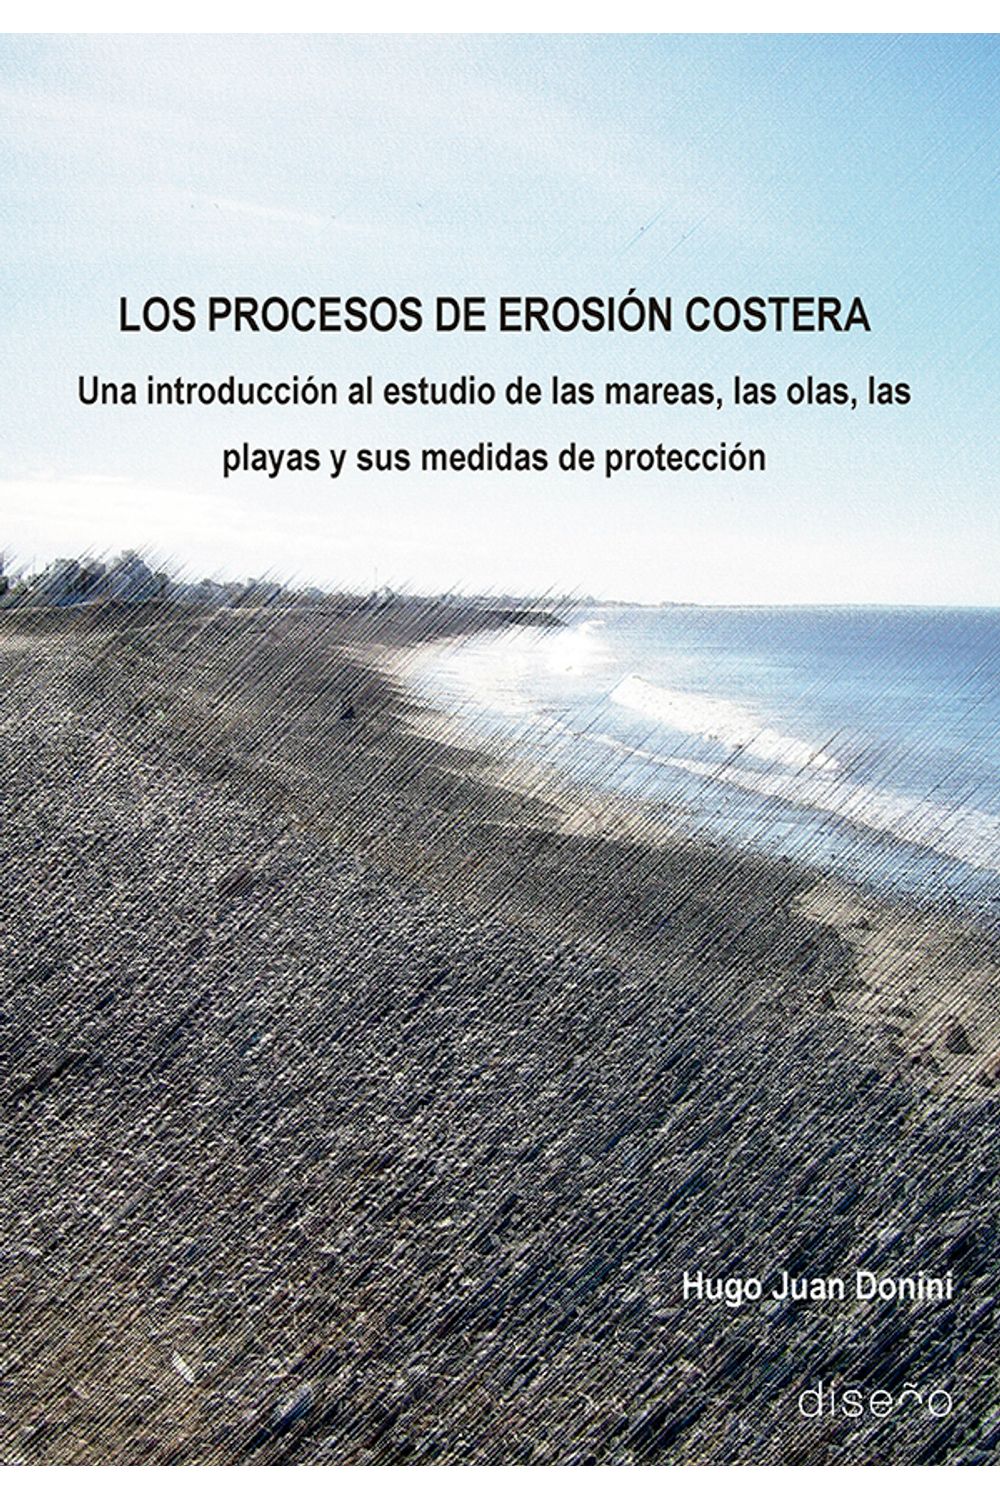 bm-los-procesos-de-erosion-costera-nobukodiseno-editorial-9781643605128